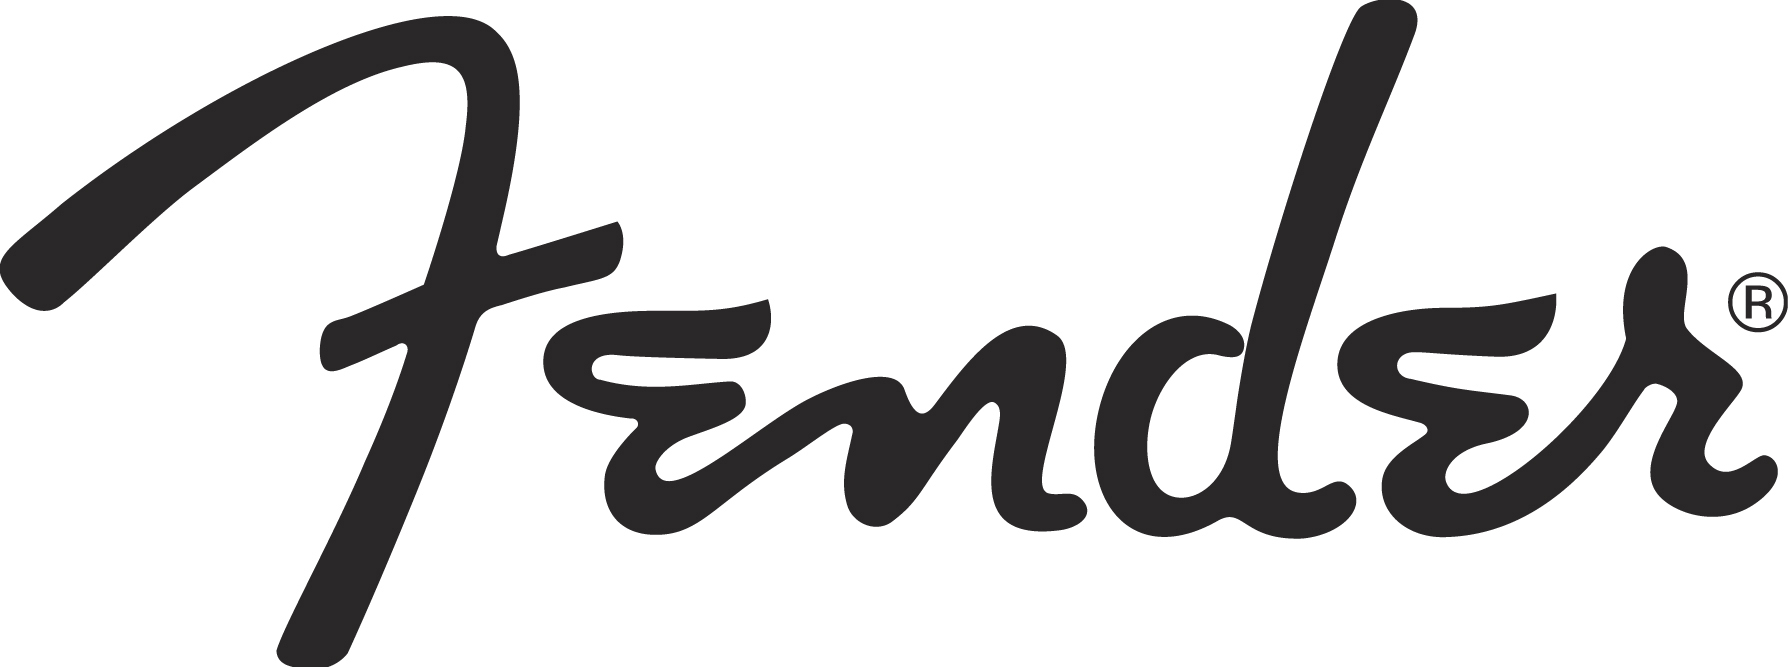 Fender-Logo-JPG_1211322105.jpg